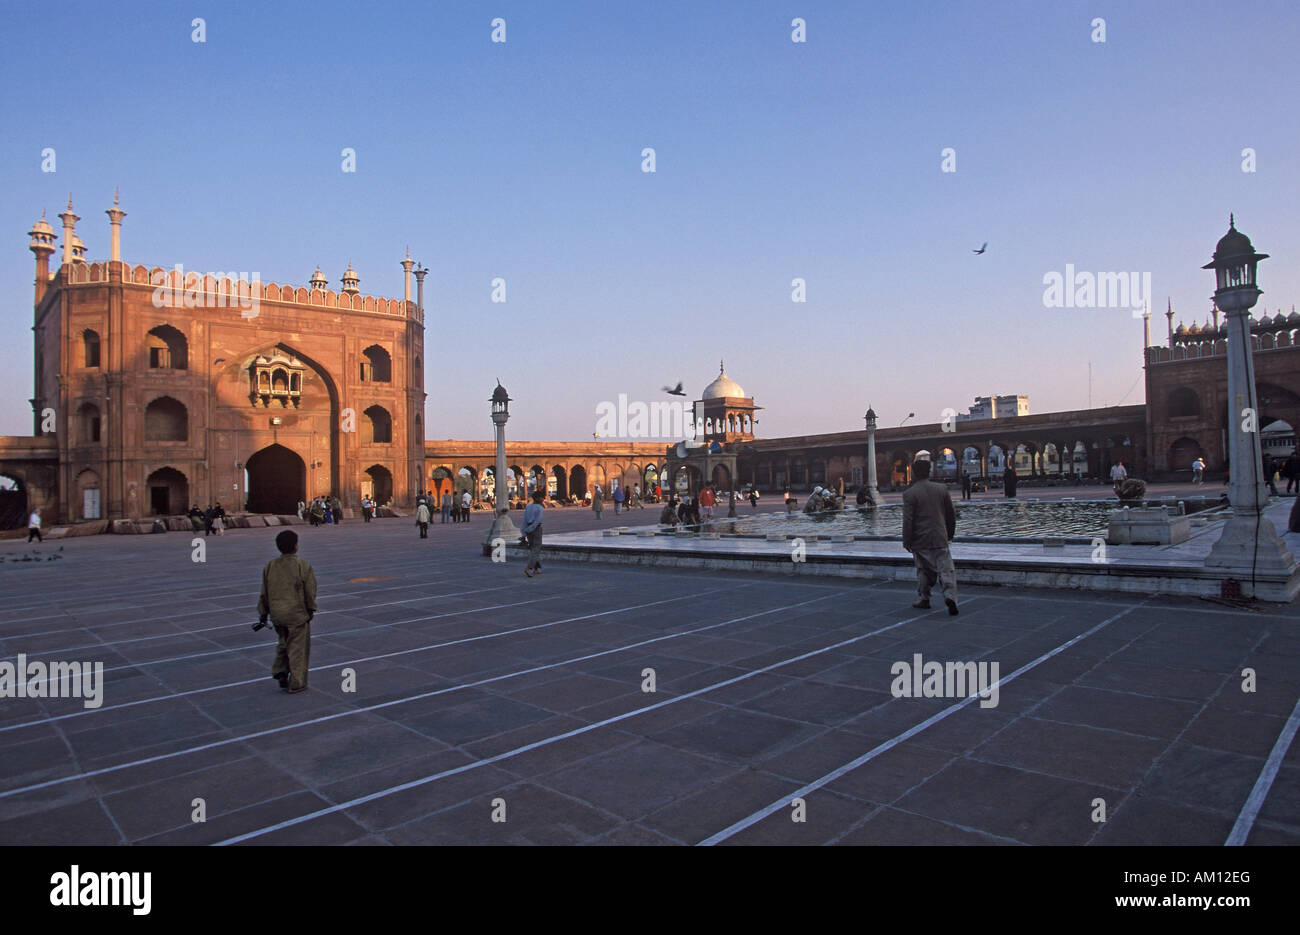 Courtyard of the Jama Masjid, Old Delhi, India, Southasia, Asia Stock Photo